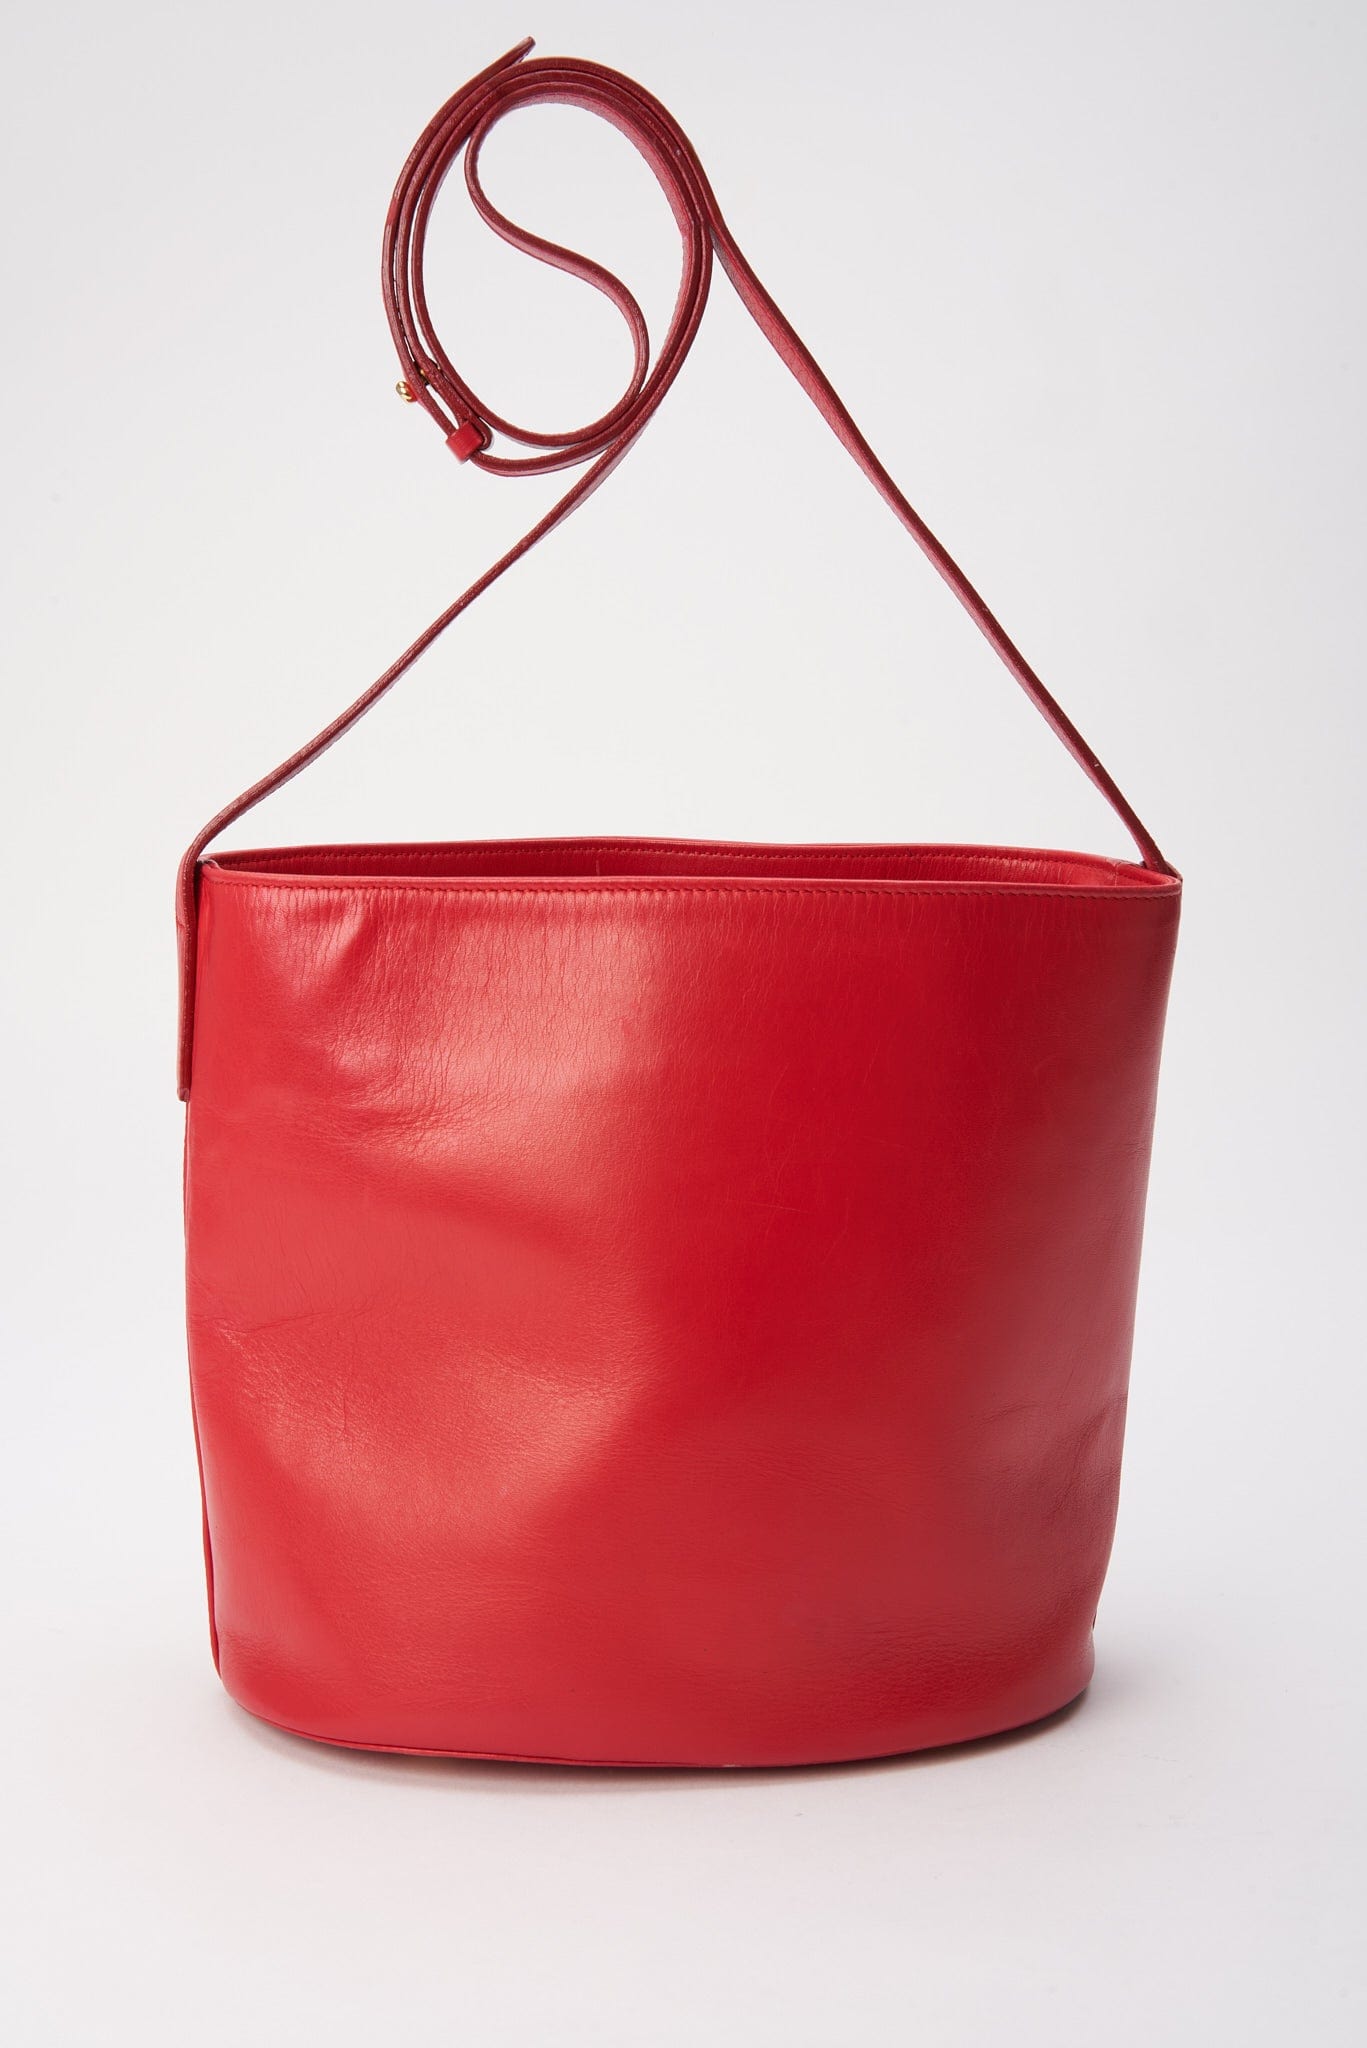 Vintage Celine Red Leather Bucket Bag